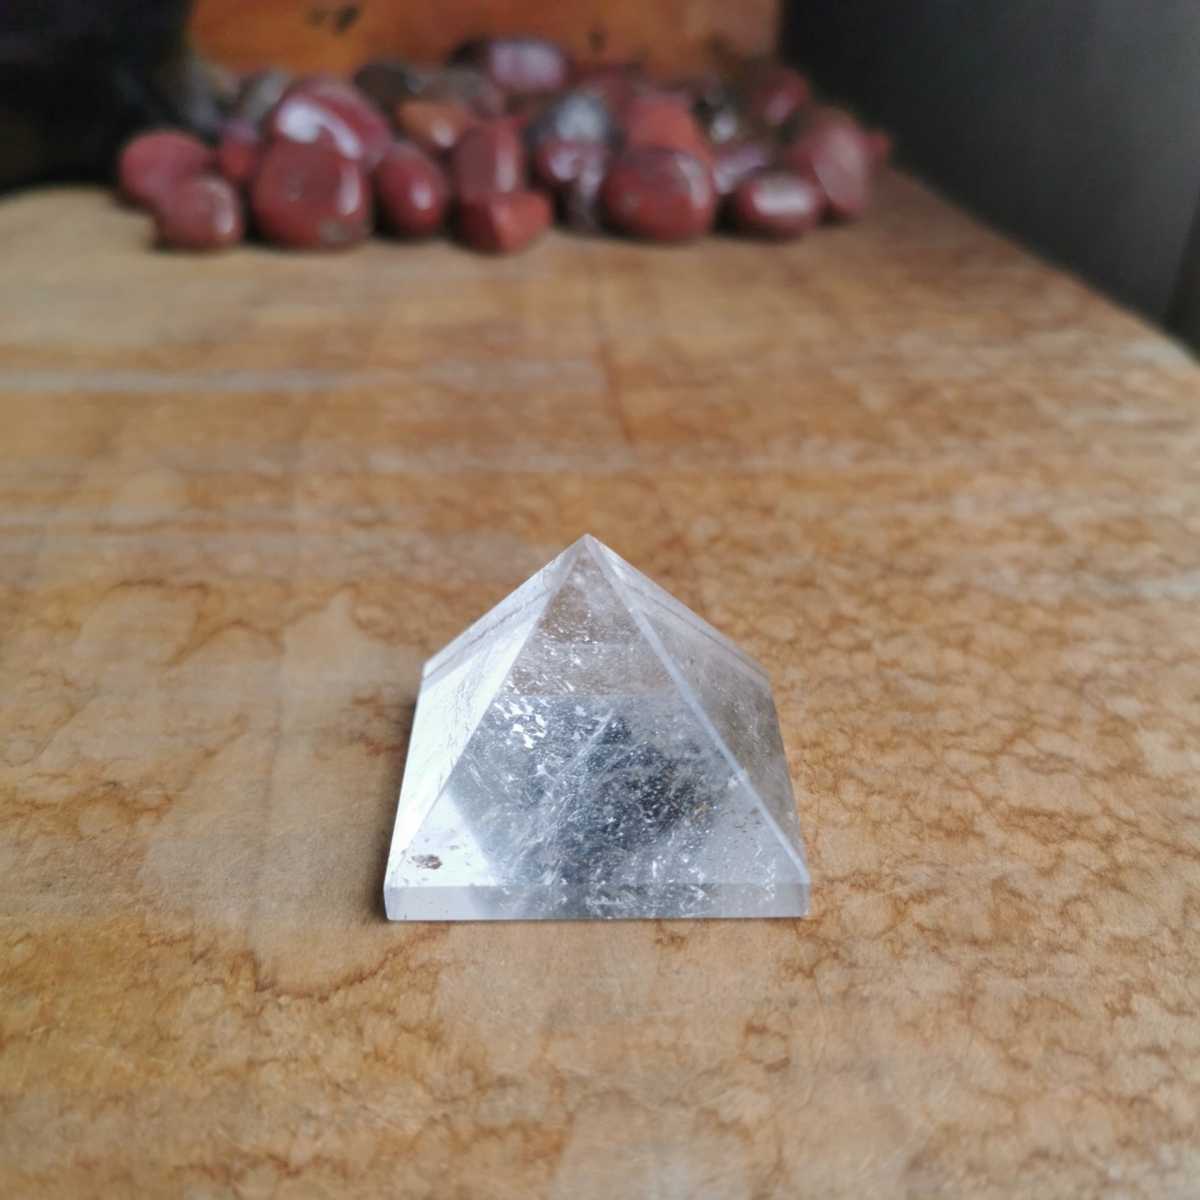 シールに】 クオーツ・クリスタル 水晶 四角錐ピラミッド型 約26g